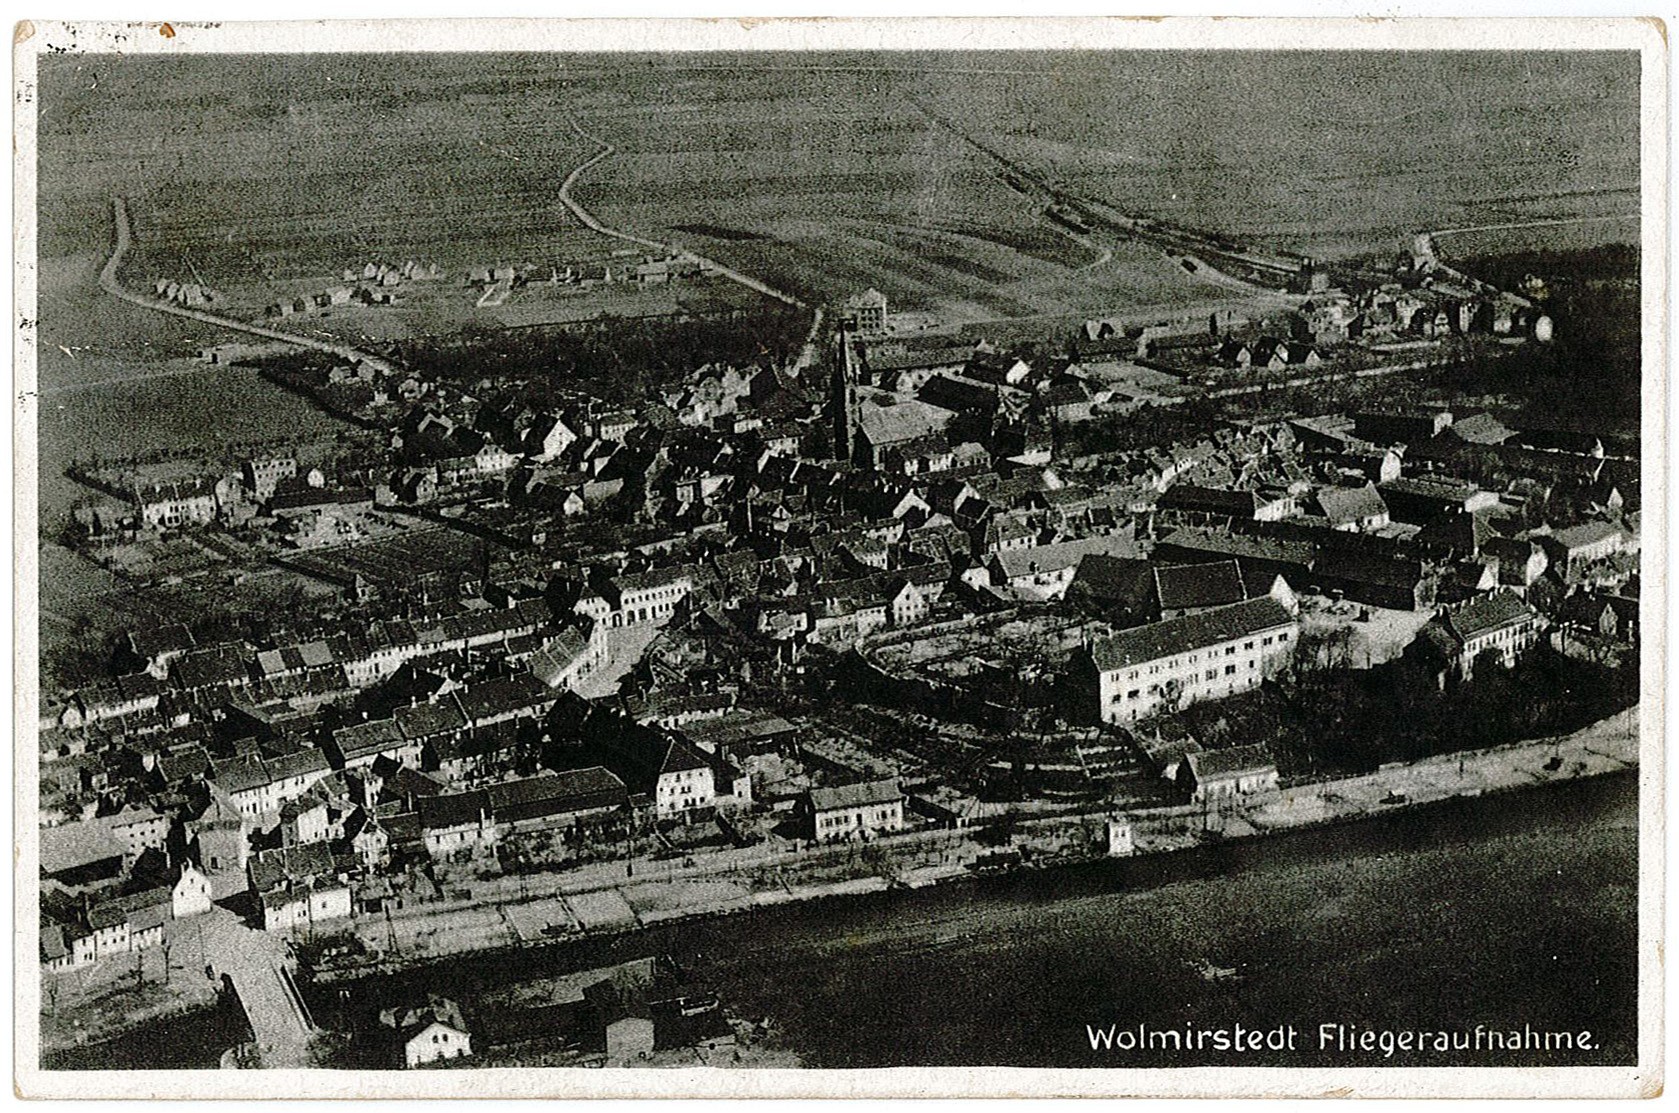 Postkarte: Motiv: Luftbildaufnahme - "Wolmirstedt Fliegeraufnahme" (Museum Wolmirstedt RR-F)